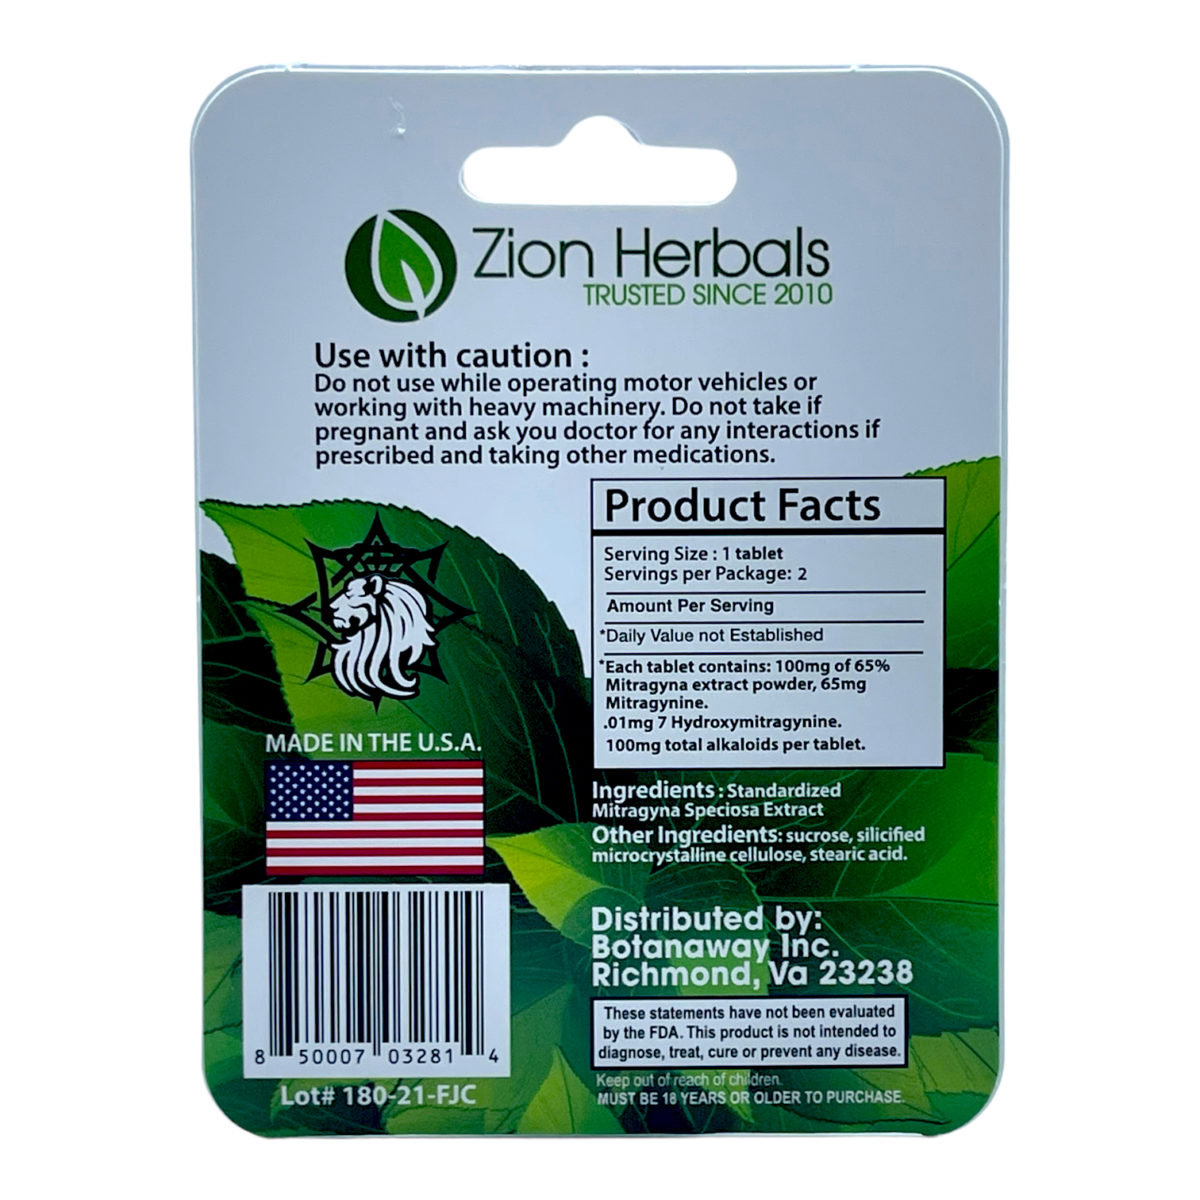 Zion Herbals 65 Salt Kratom Extract Tablets – 2 count